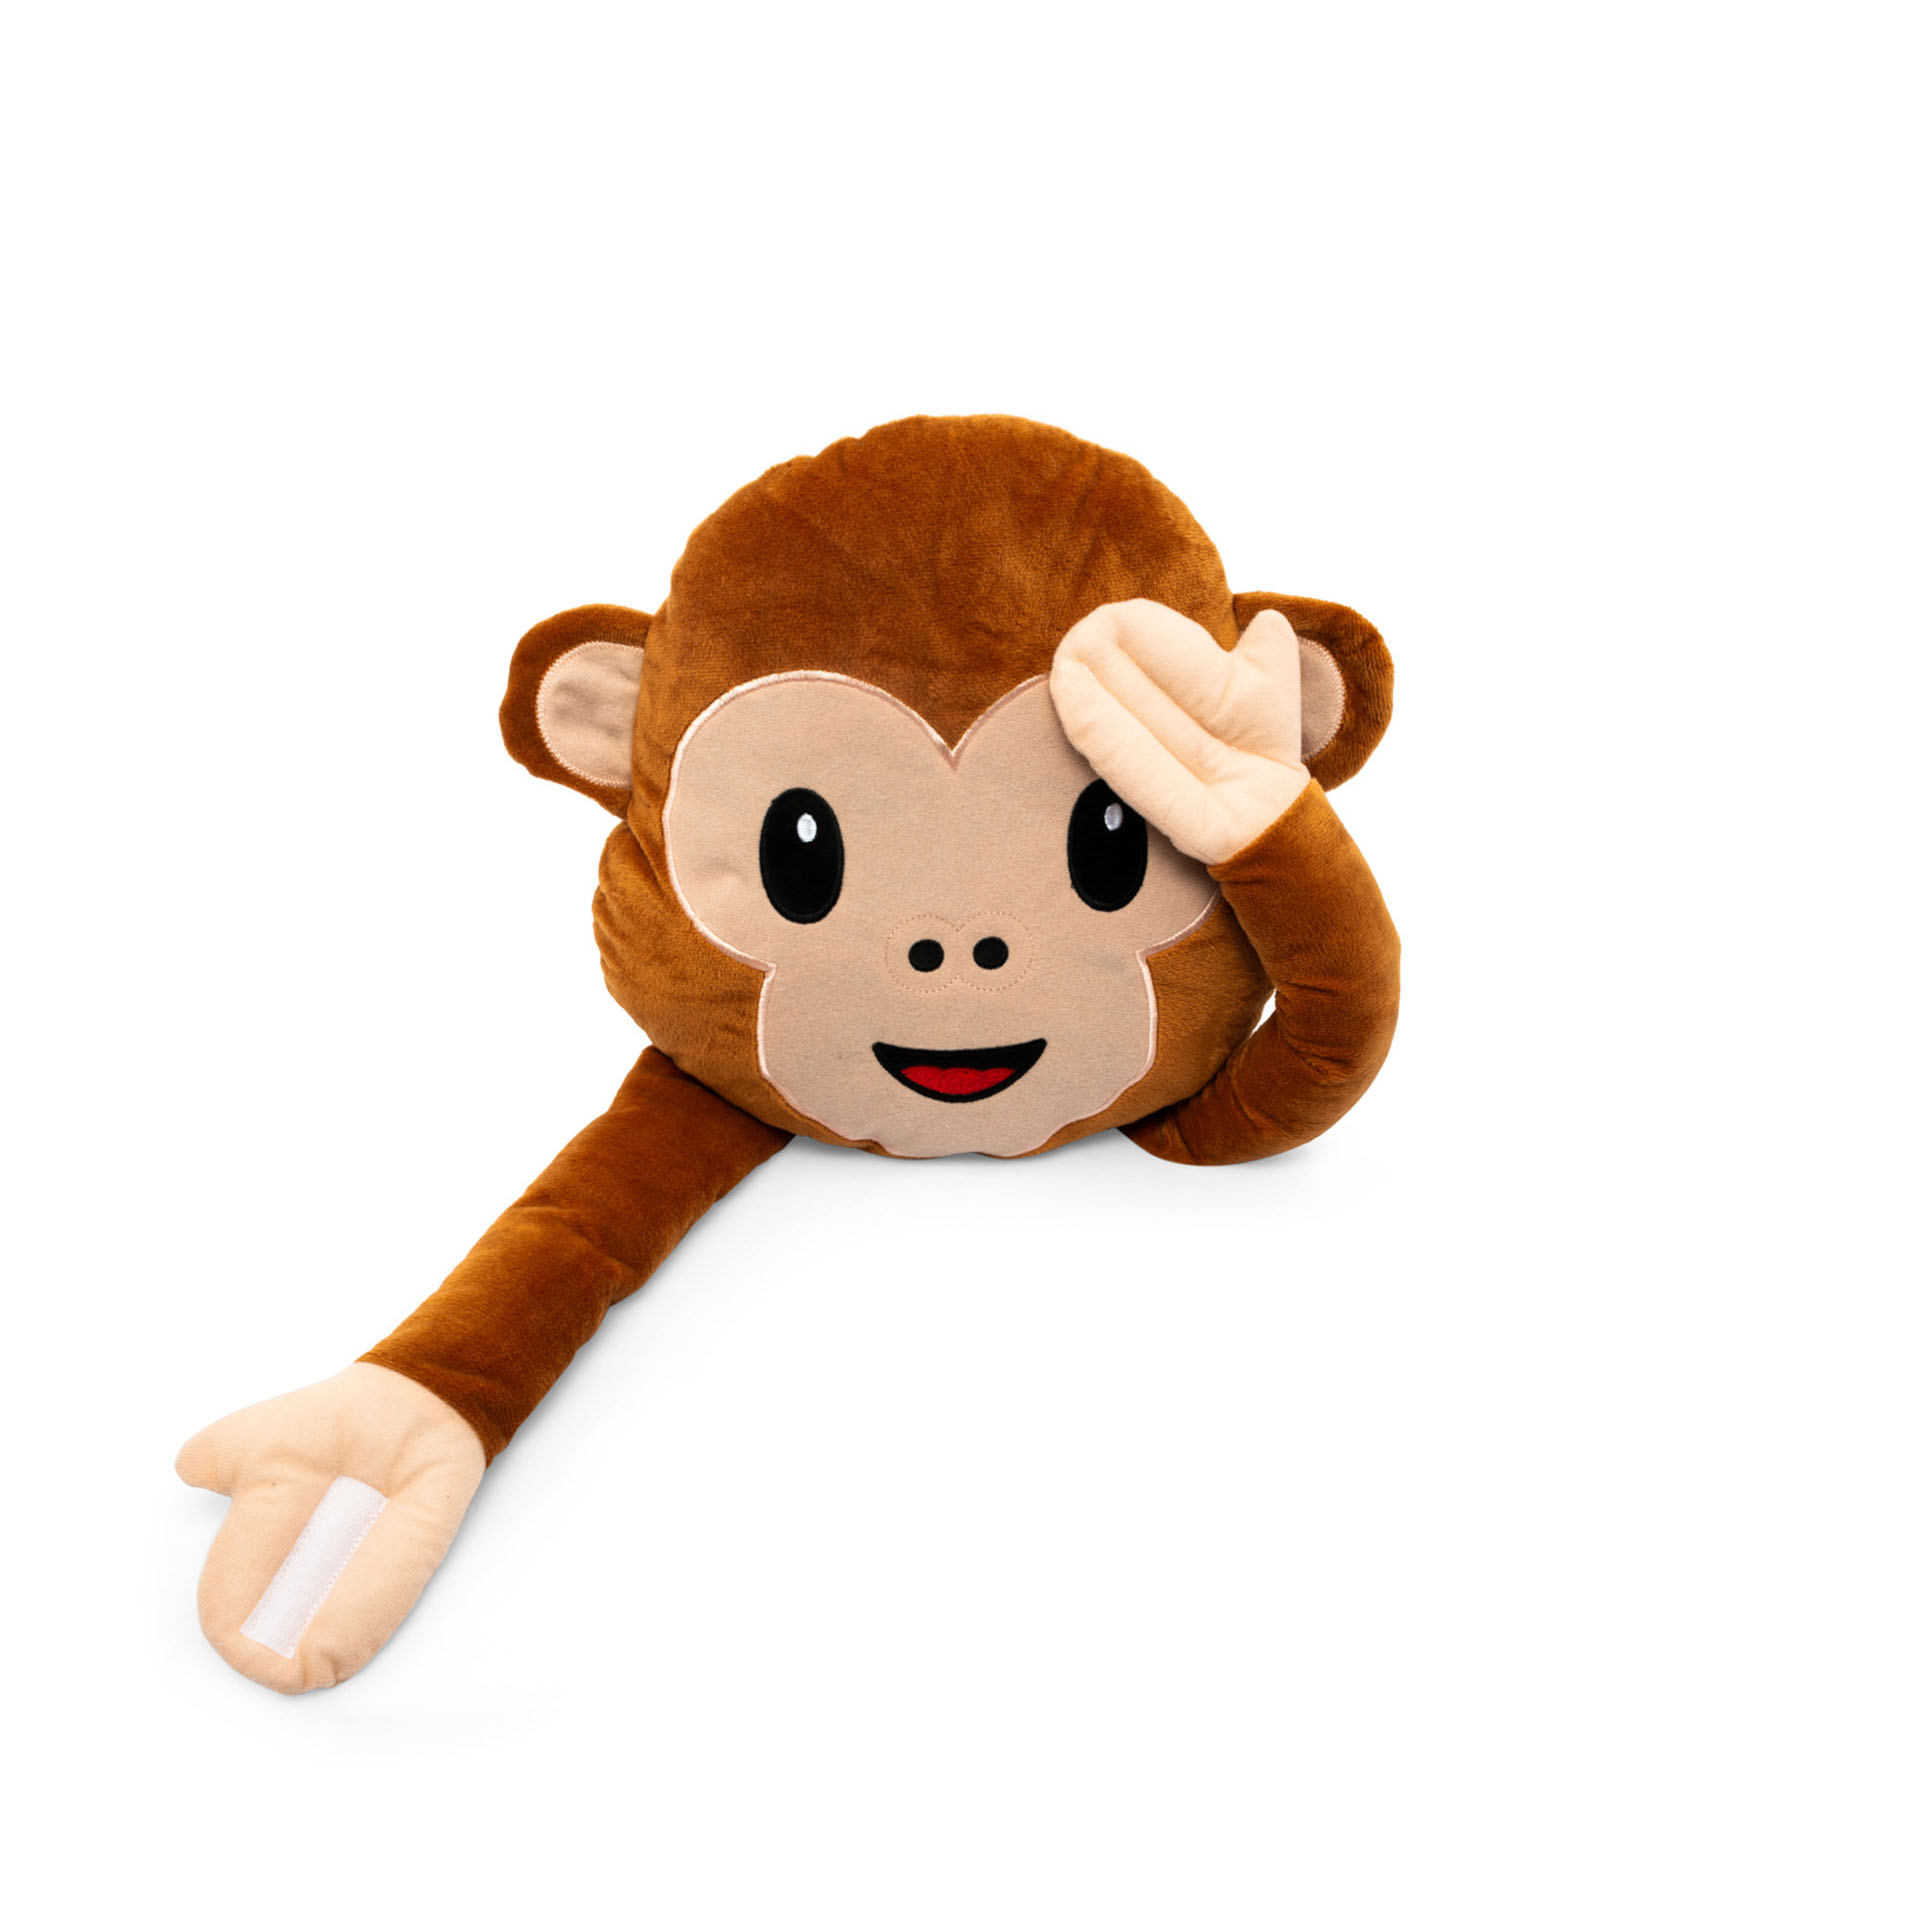 621048 Cuscino emoticon scimmietta non vedo non sento non parlo diametro 30 cm MEDIA WAVE store 